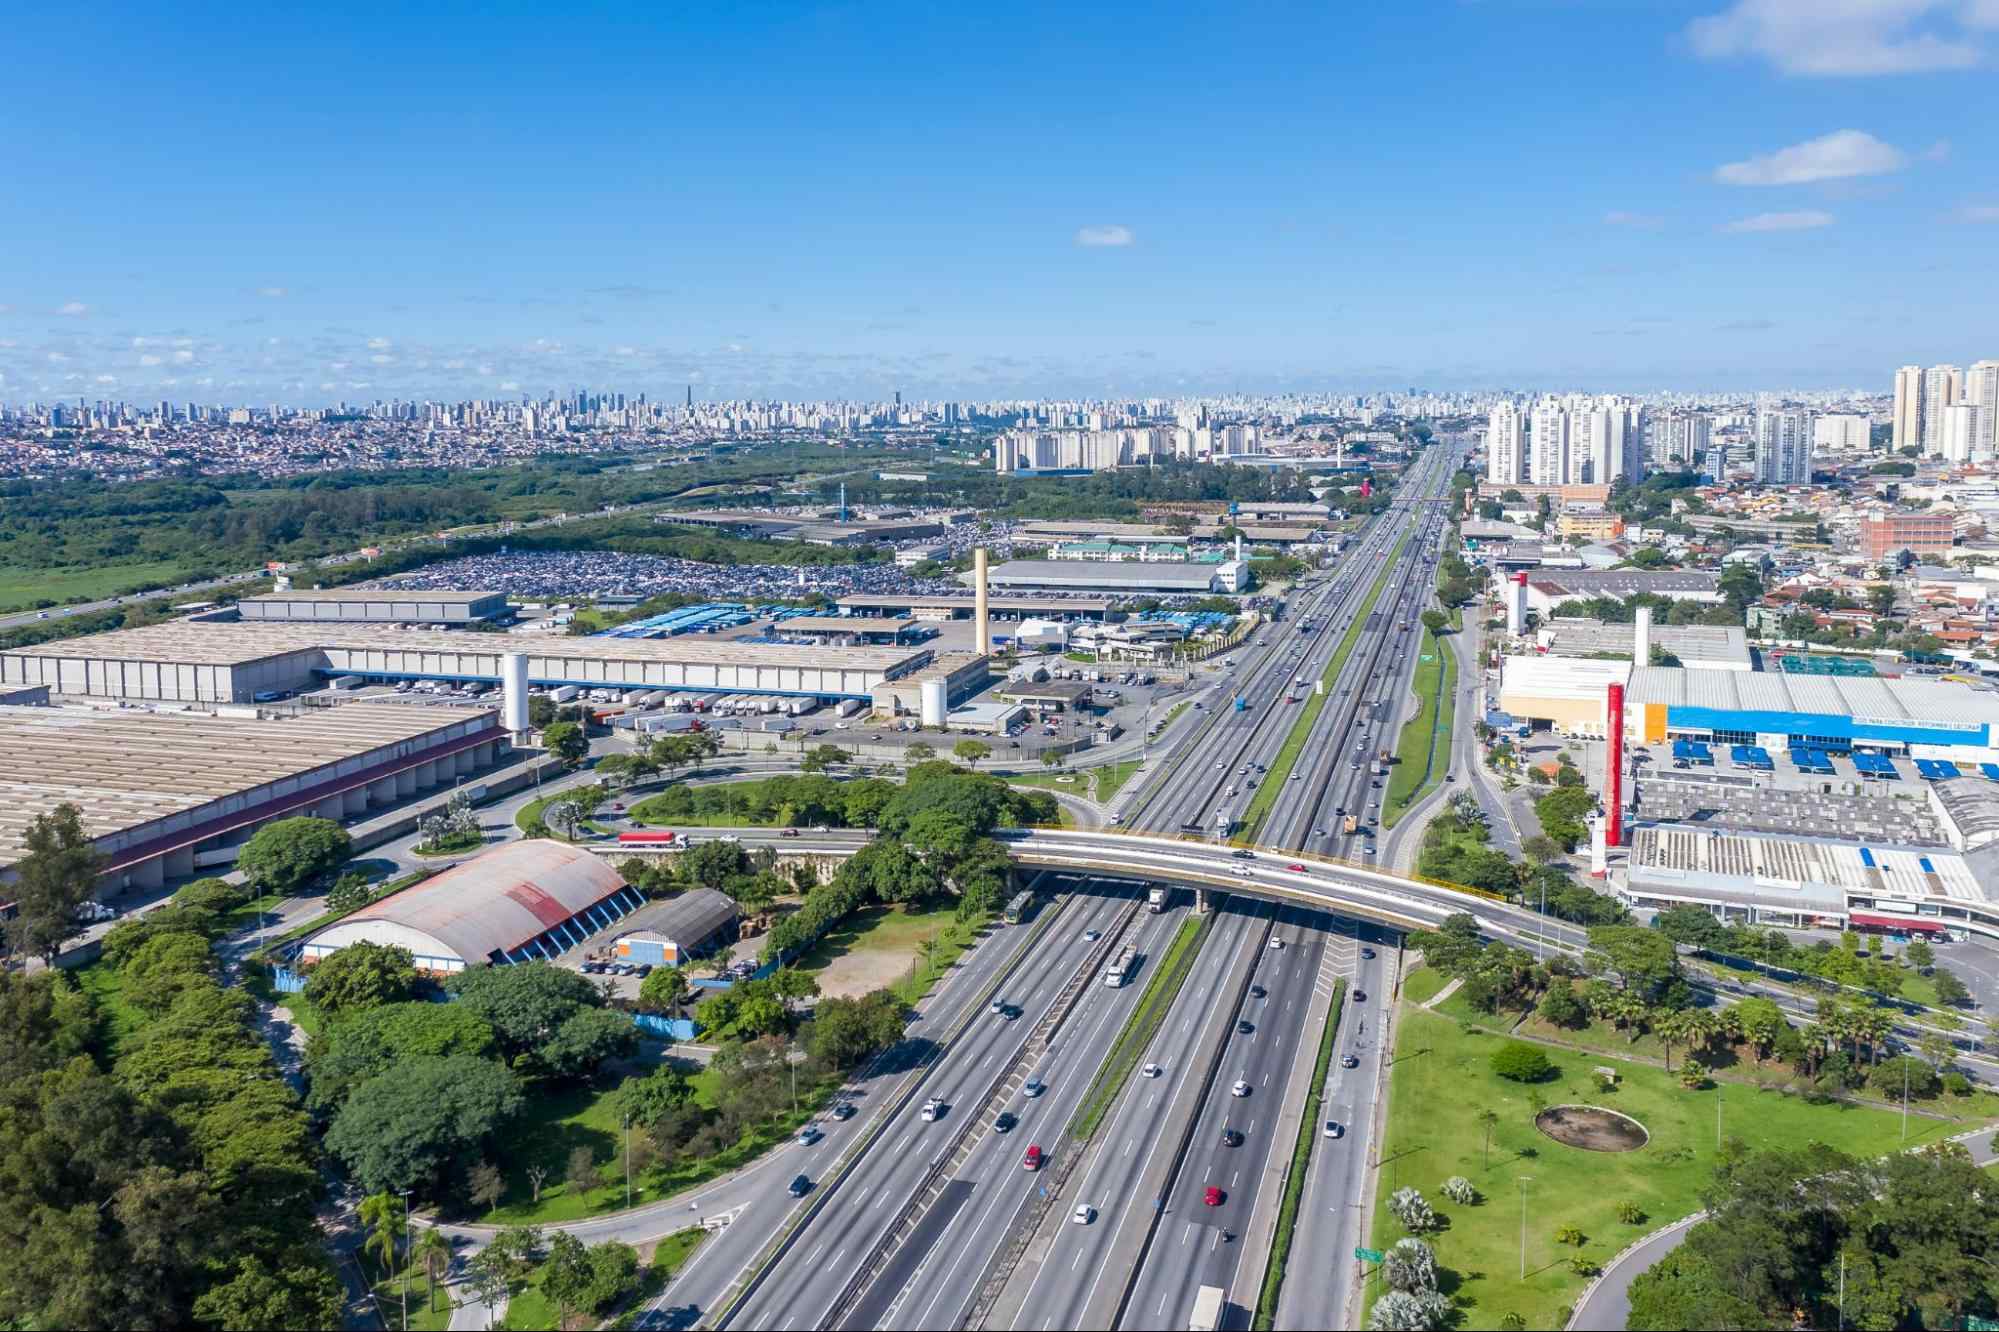 Imagem aérea da cidade de Guarulhos, com a rodovia Presidente Dutra em destaque, centralizada na imagem